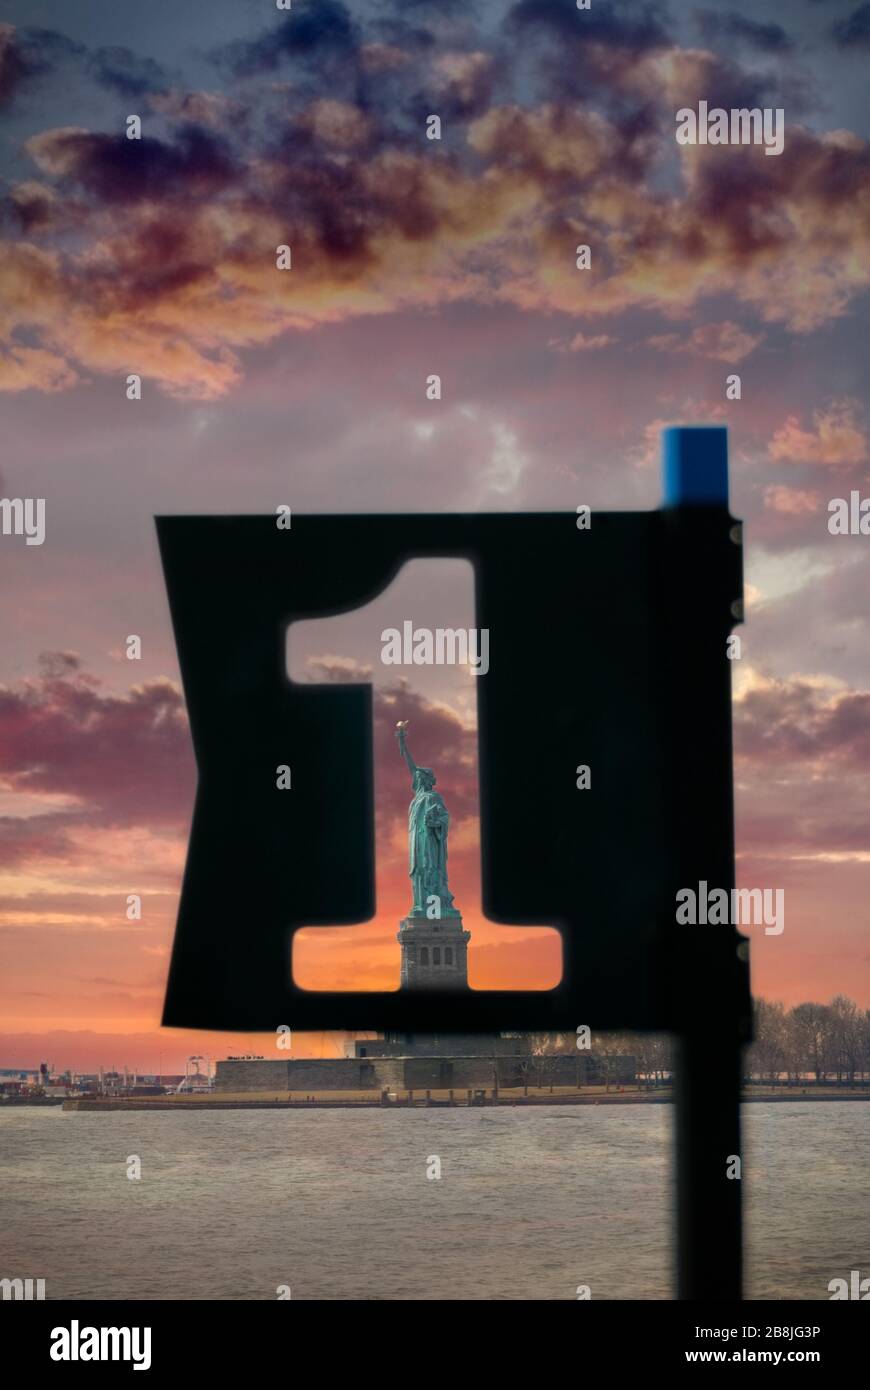 L'Amérique d'abord. Statue de la liberté à New York, aux États-Unis d'Amérique, filmée à travers un panneau de port avec la coupe numéro 1. Amérique #1. Banque D'Images